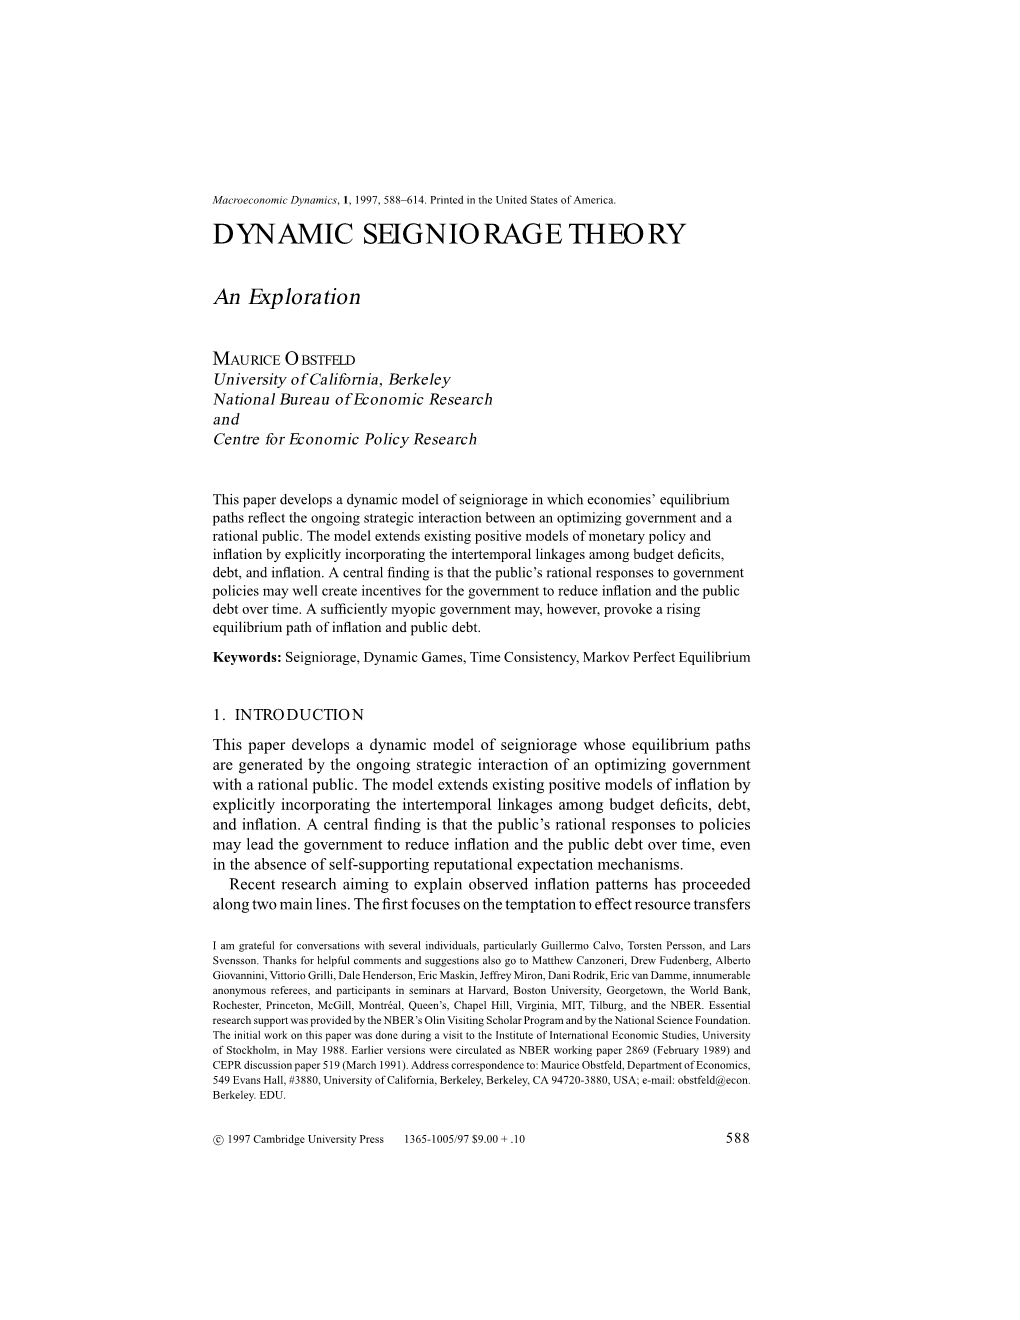 Dynamic Seigniorage Theory